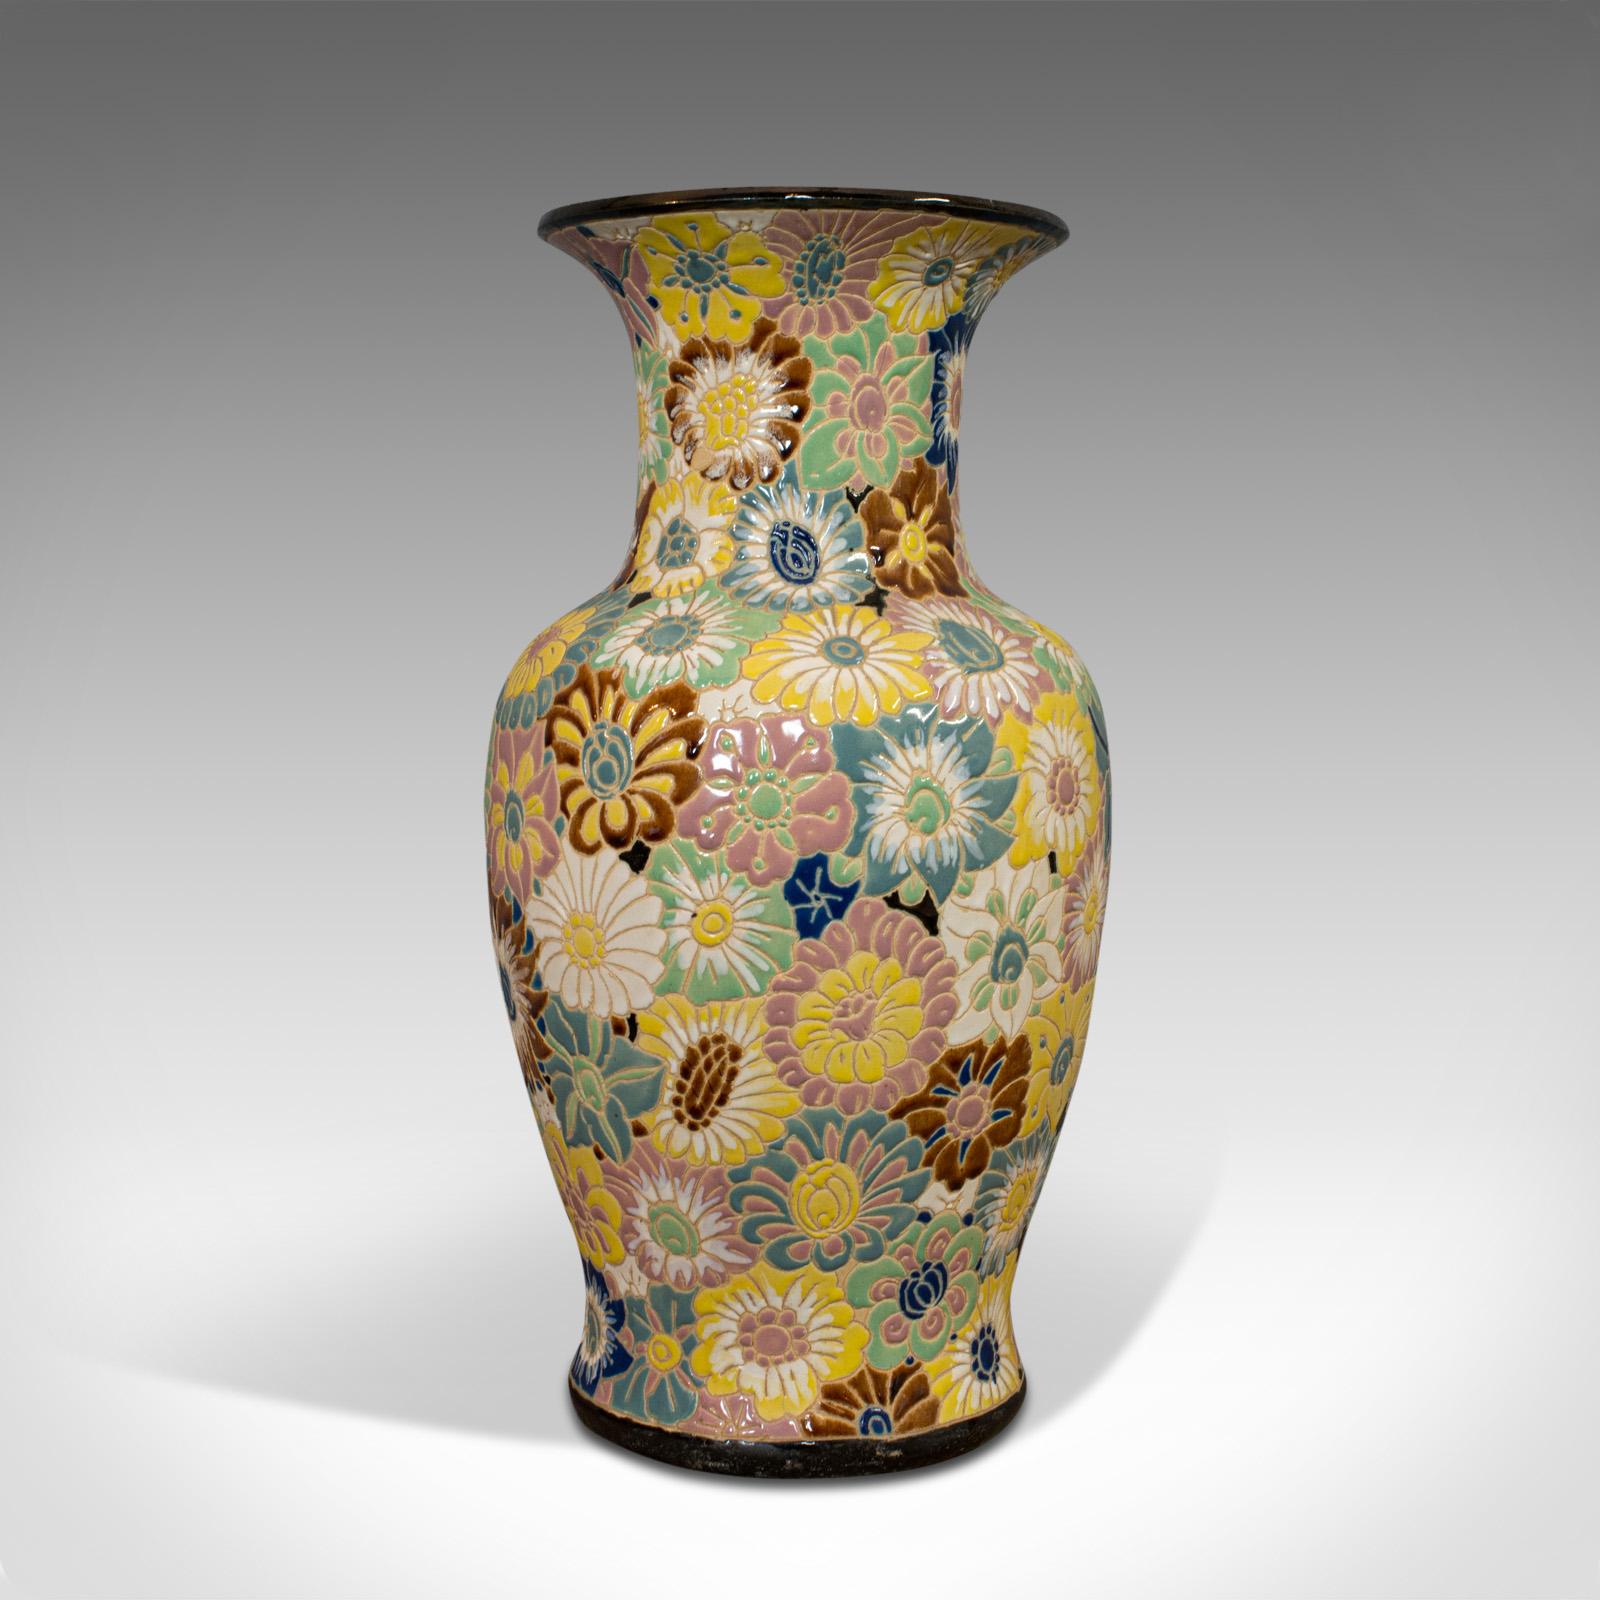 20th Century Vintage Decorative Flower Vase, Oriental, Ceramic, Decorative, Urn, Stick, Stand